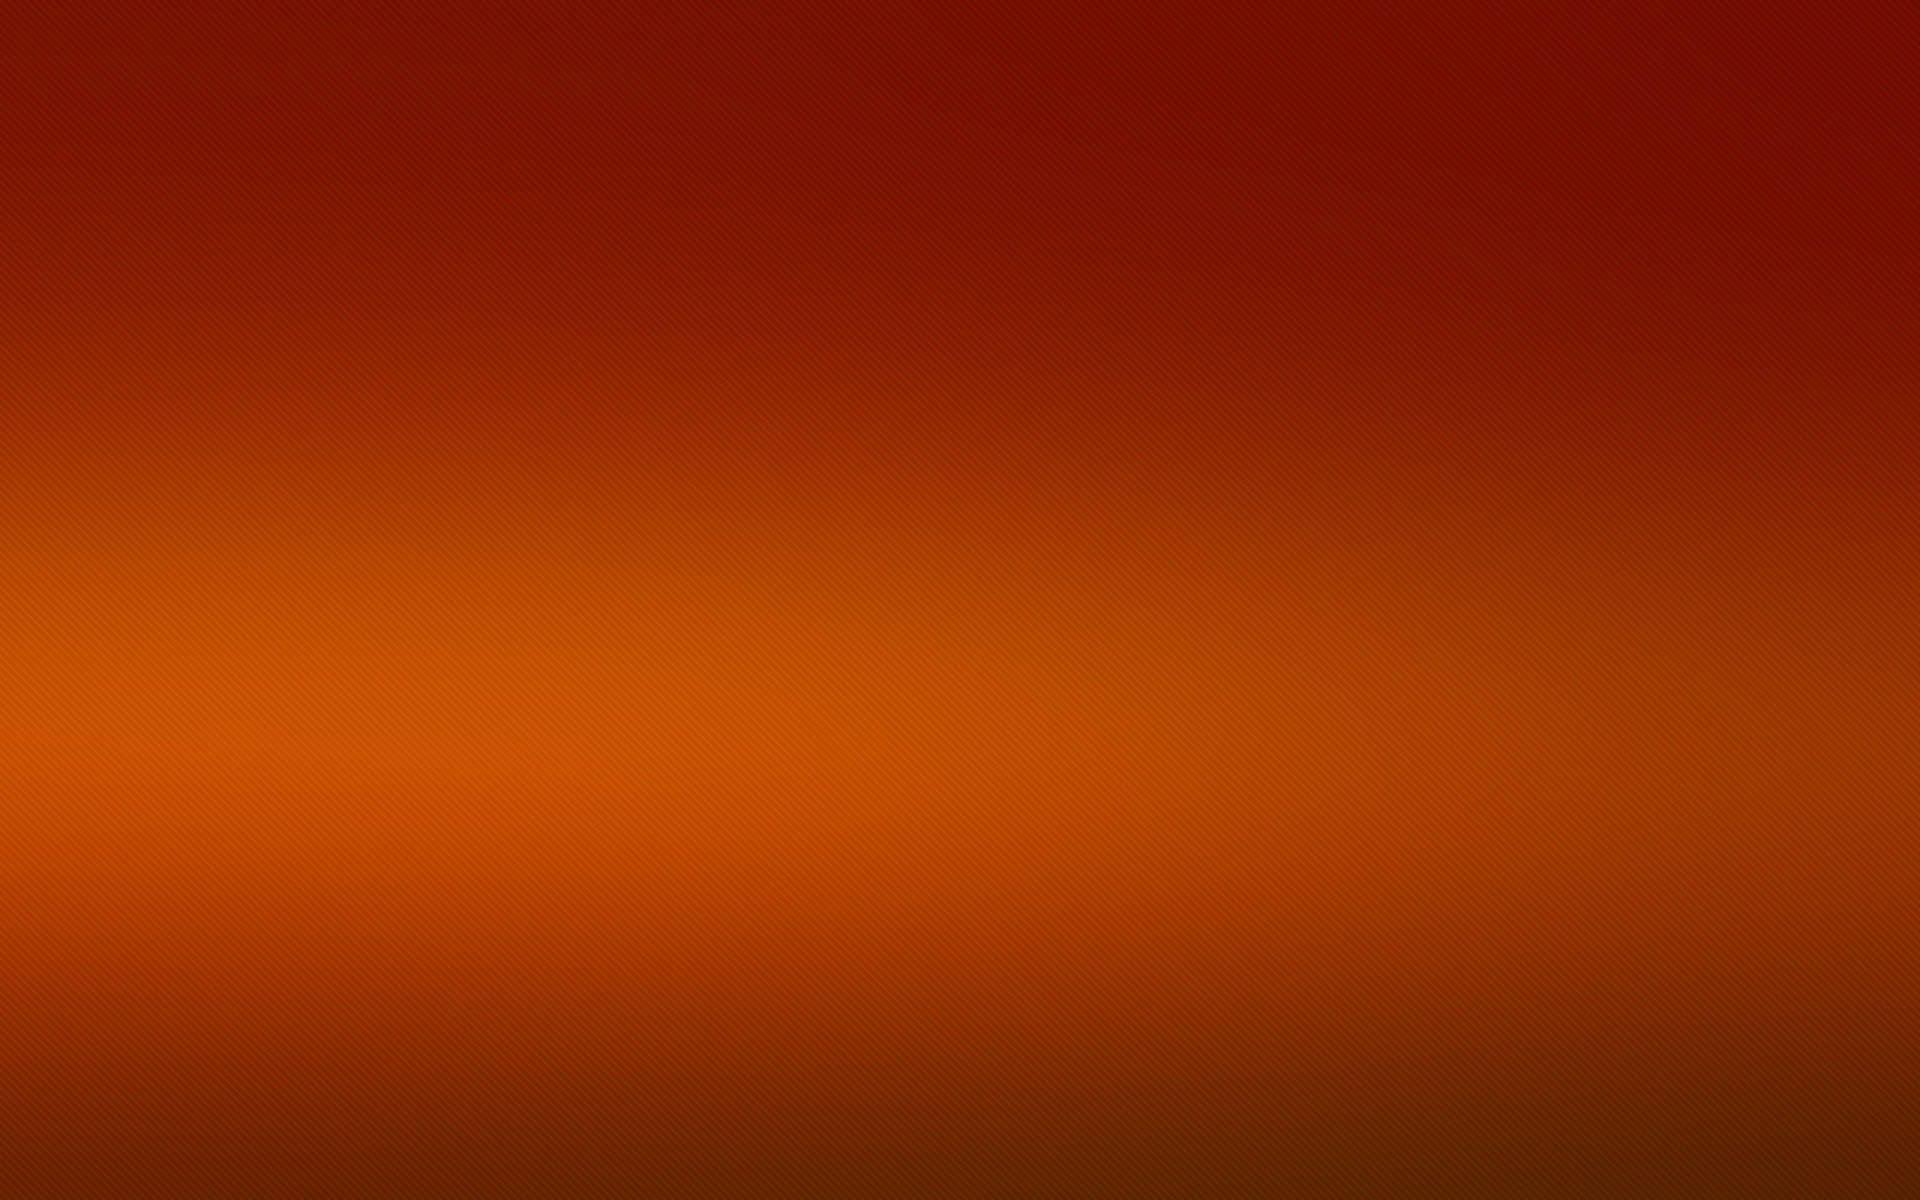 solid dark orange background